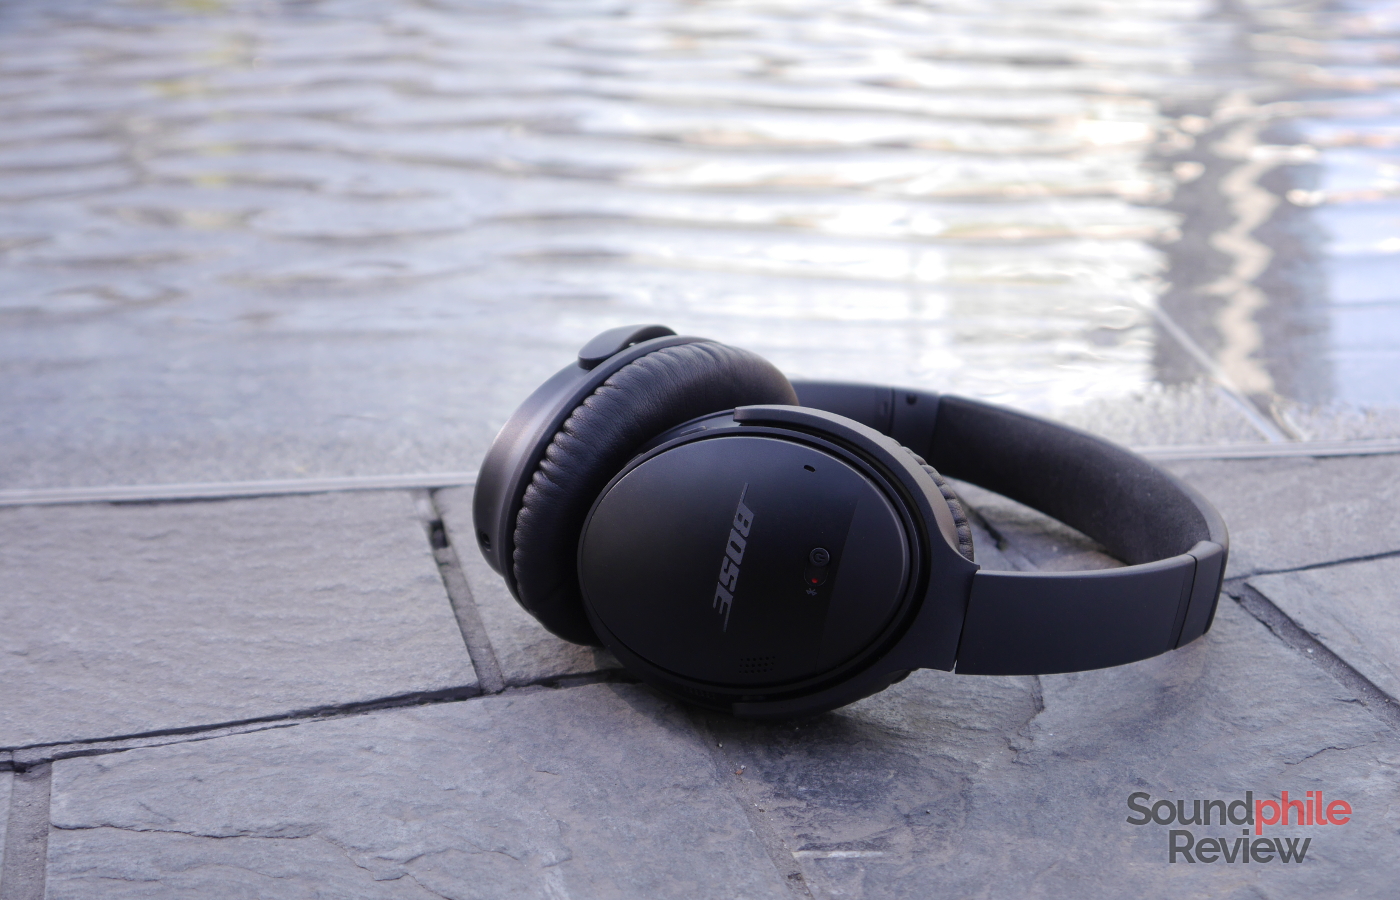 2016's Best Headphones: Bose QuietComfort 35